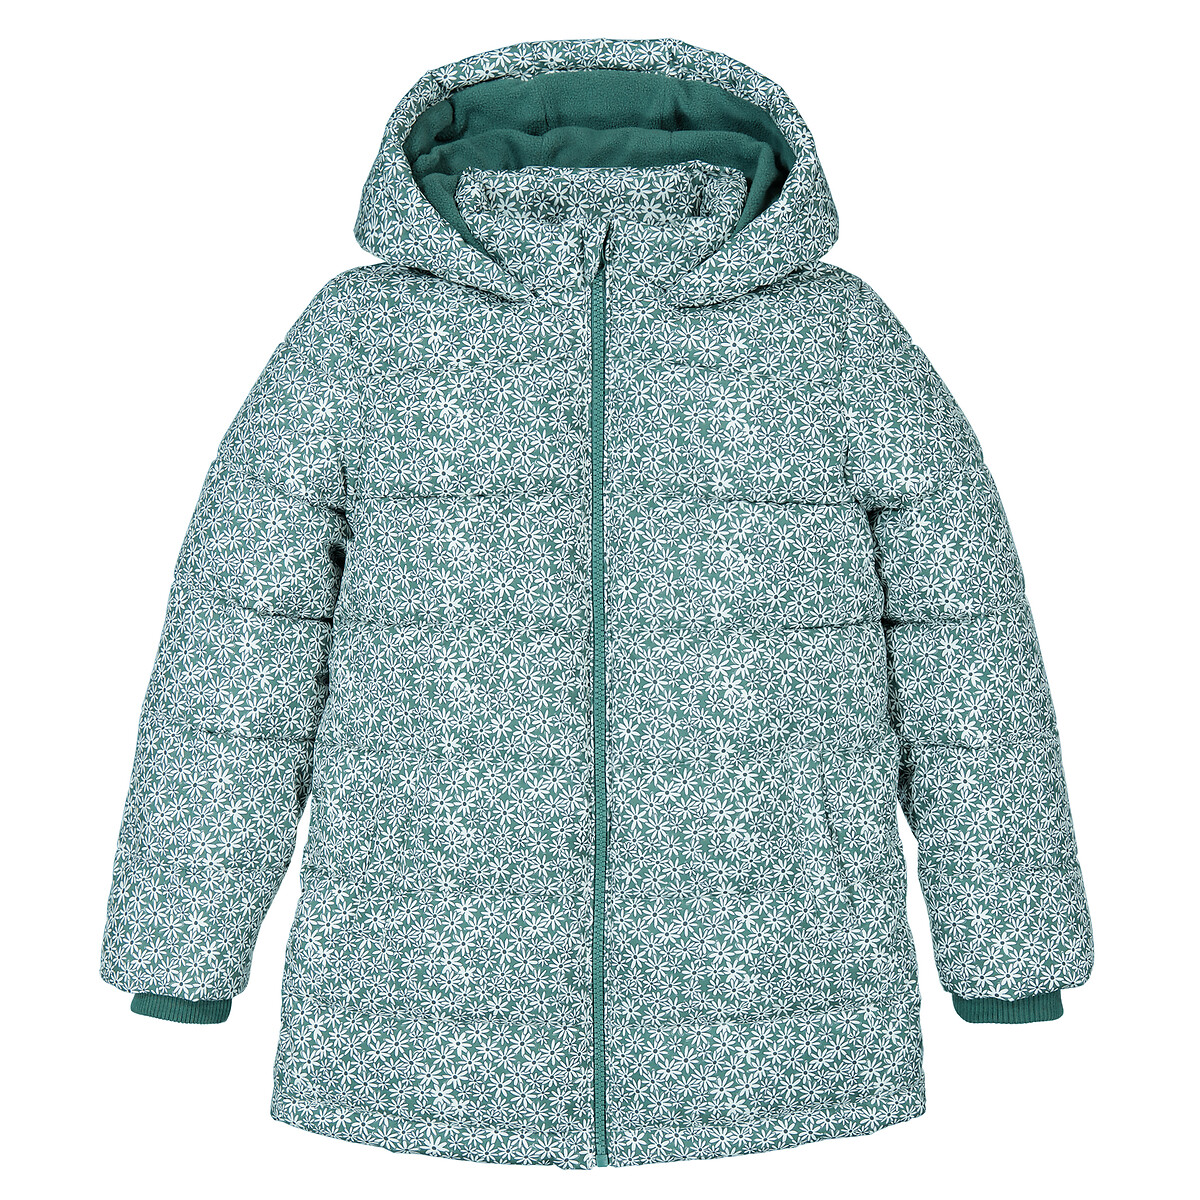 Куртка Стеганая утепленная с капюшоном цветочный принт 6 лет - 114 см зеленый LaRedoute, размер 6 лет - 114 см - фото 3